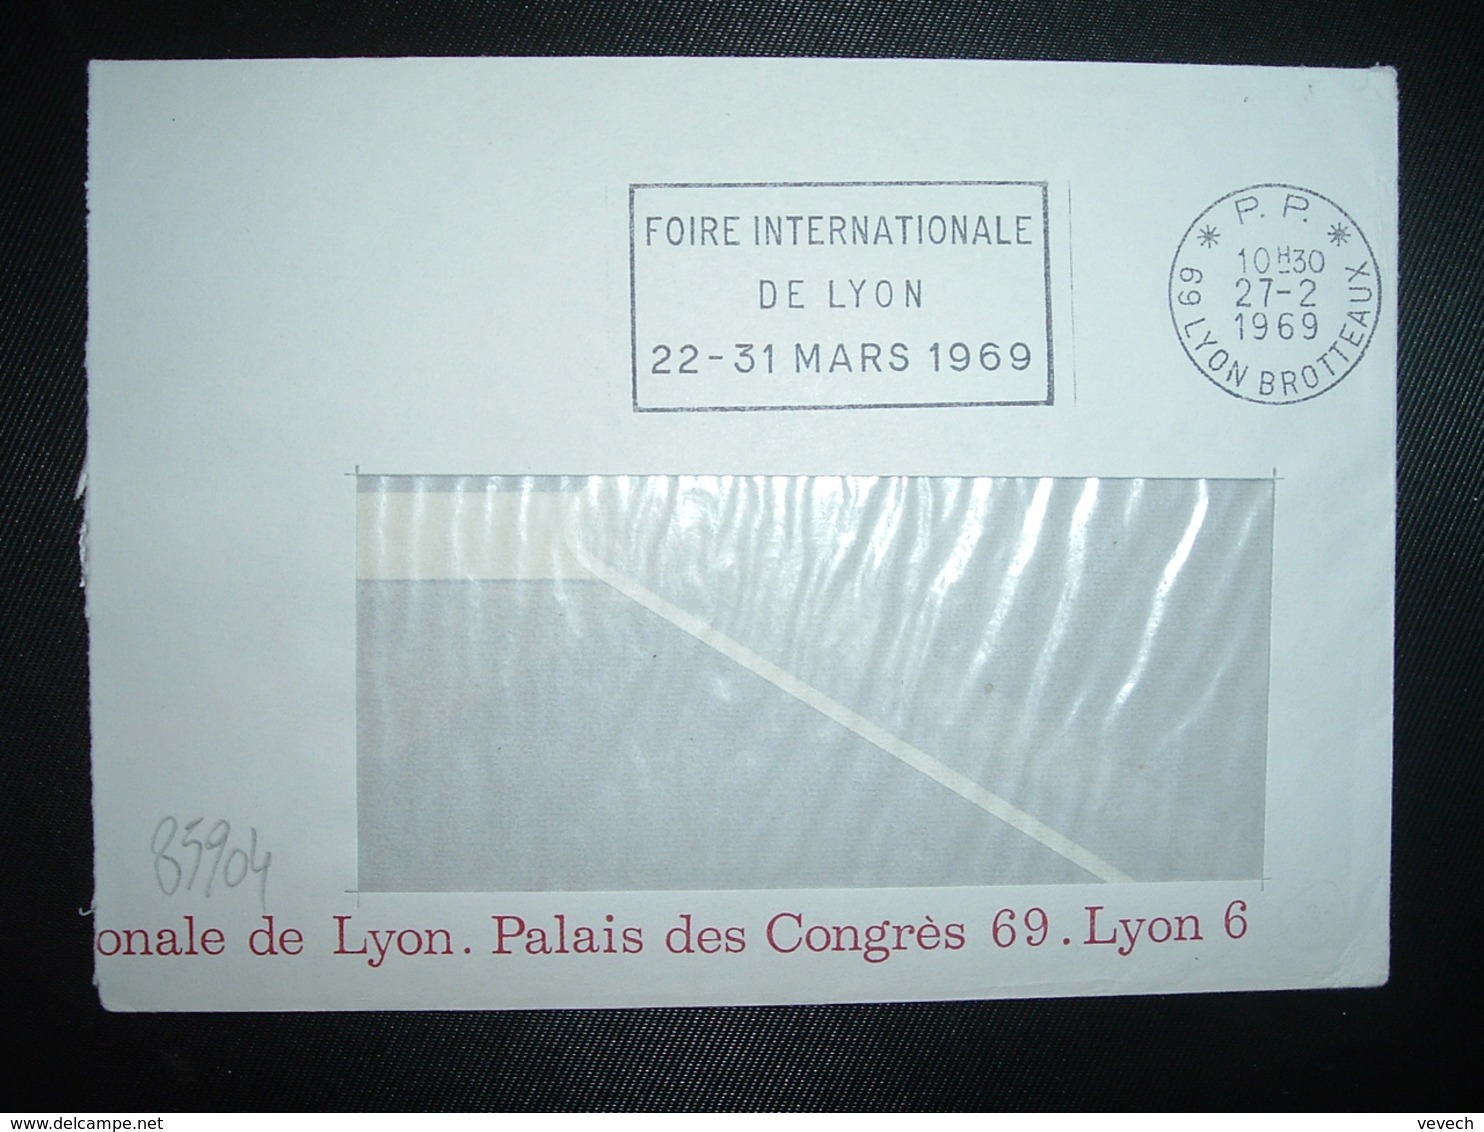 LETTRE PORT PAYE OBL.MEC.27-2 1969 PP 69 LYON BROTTEAUX FOIRE INTERNATIONALE DE LYON MARS 1969 - Oblitérations Mécaniques (Autres)